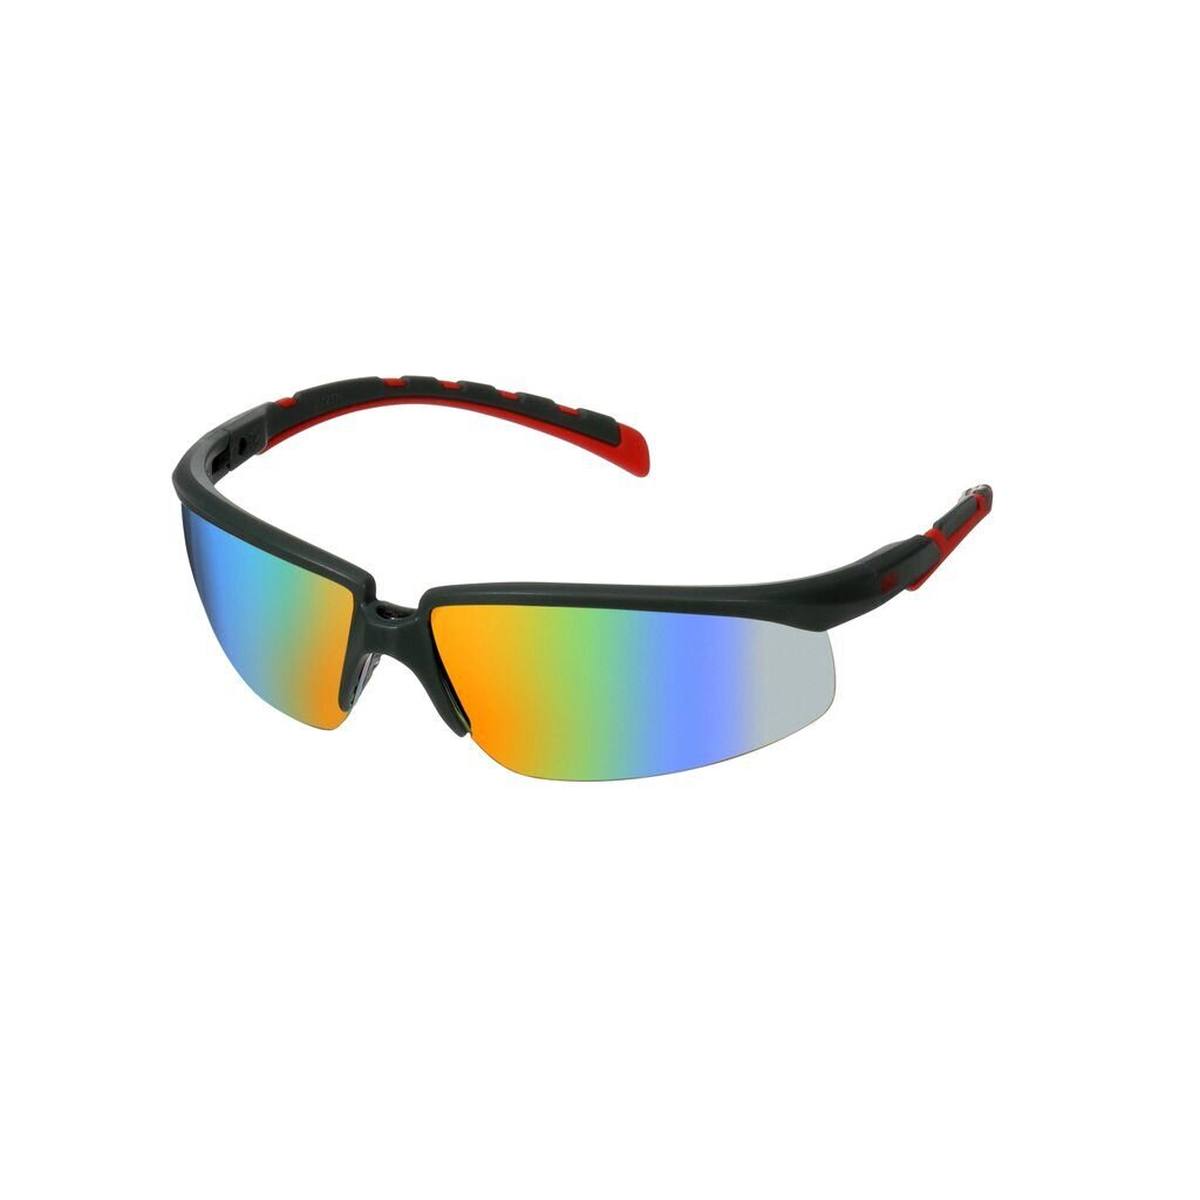 3M Solus 2000 Schutzbrille, grau/rote Bügel, Scotchgard Anti-Beschlag Beschichtung (K&N), klare Scheibe, winkelverstellbar, S2001SGAF-RED-EU